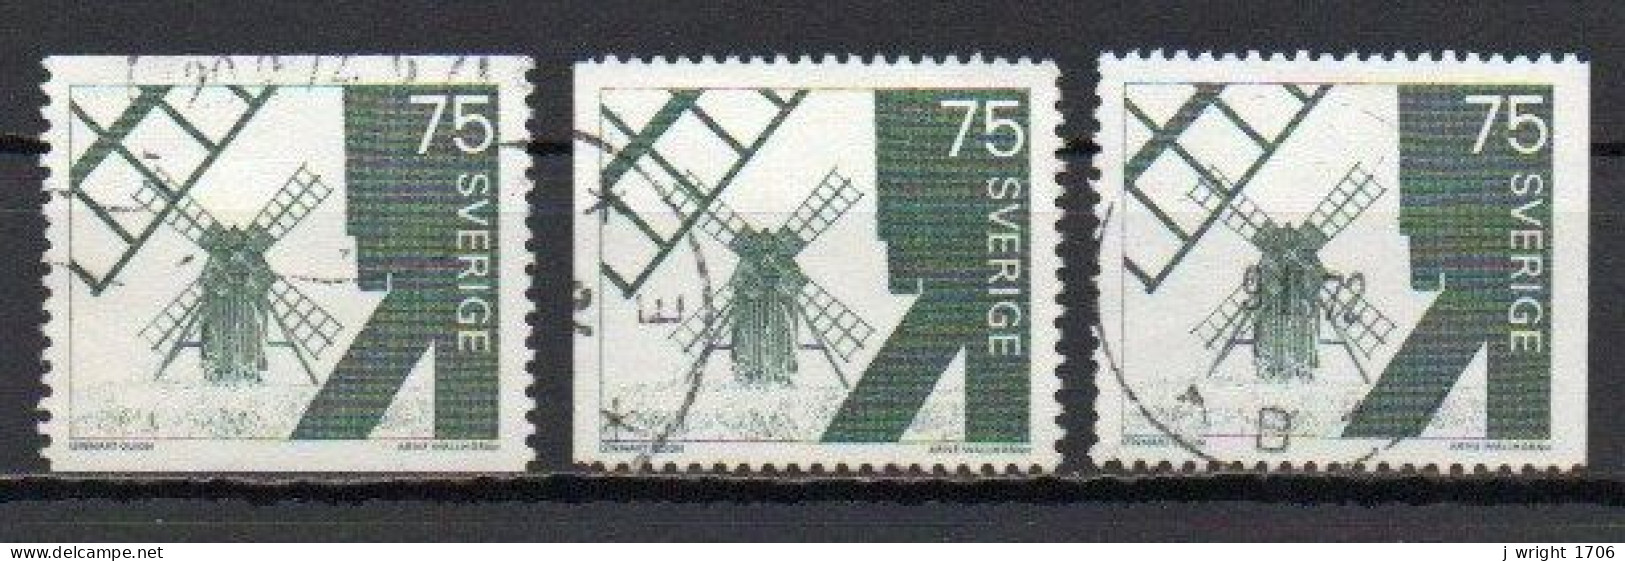 Sweden, 1971, Windmill Ölana Island, 75ö, USED - Used Stamps